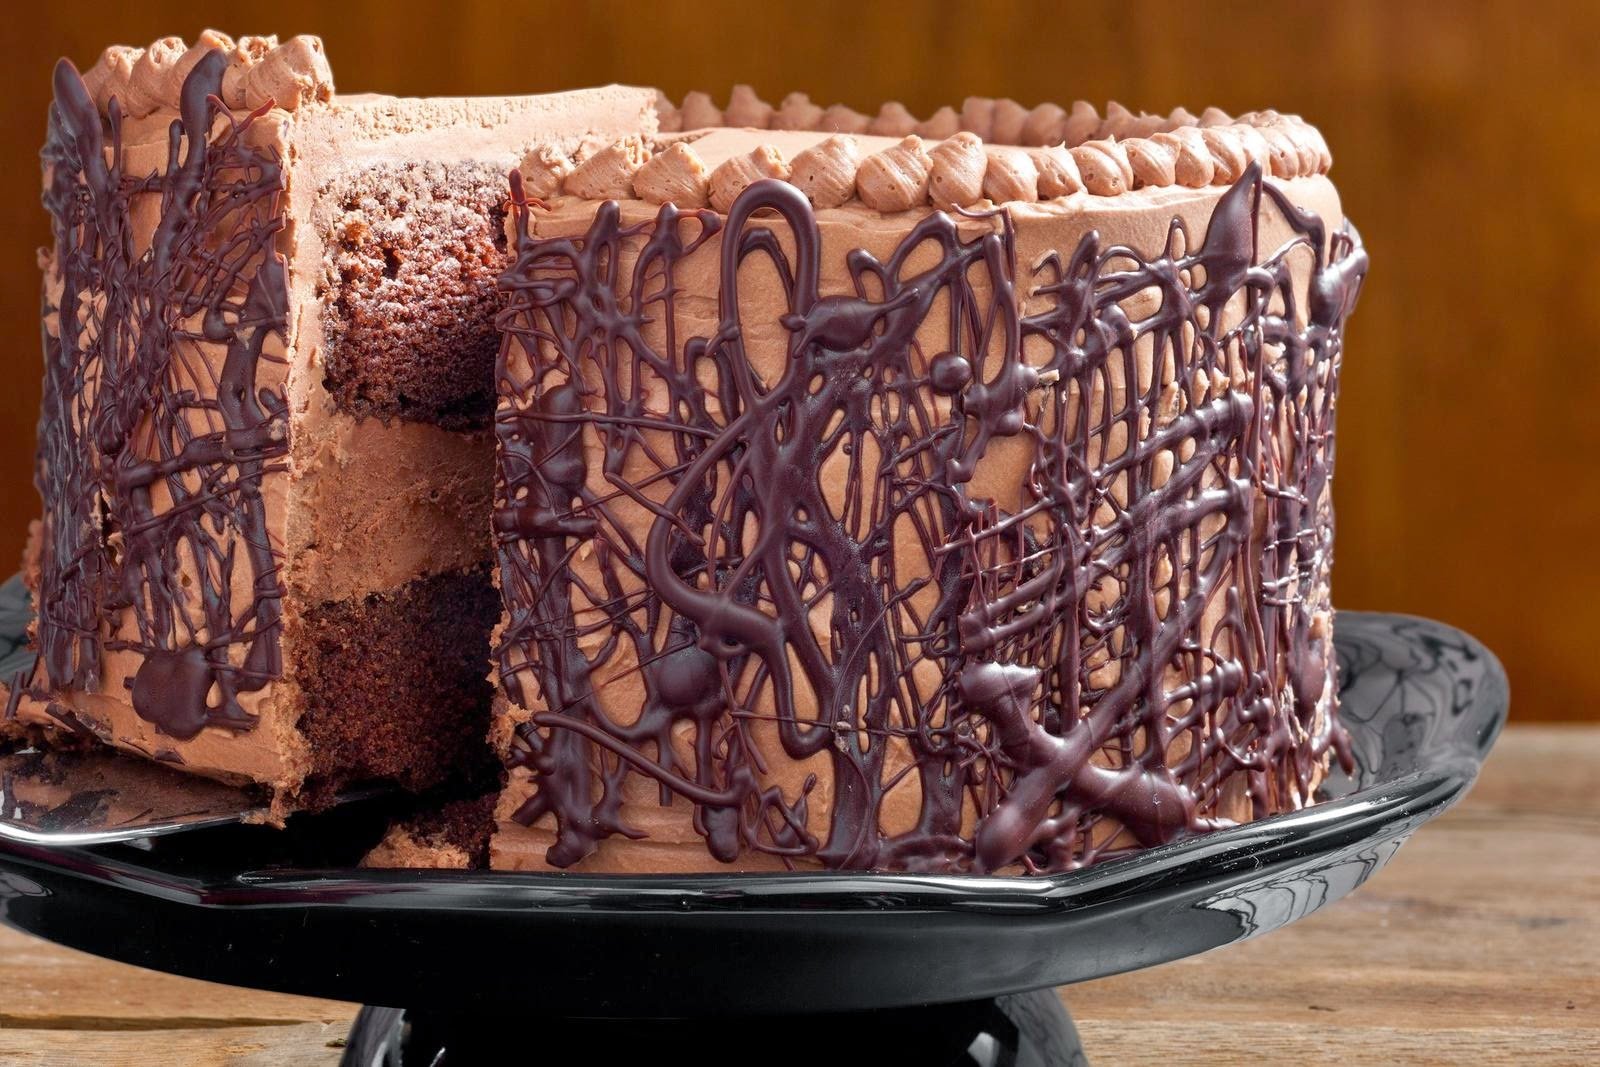 Как полить торт шоколадом полностью